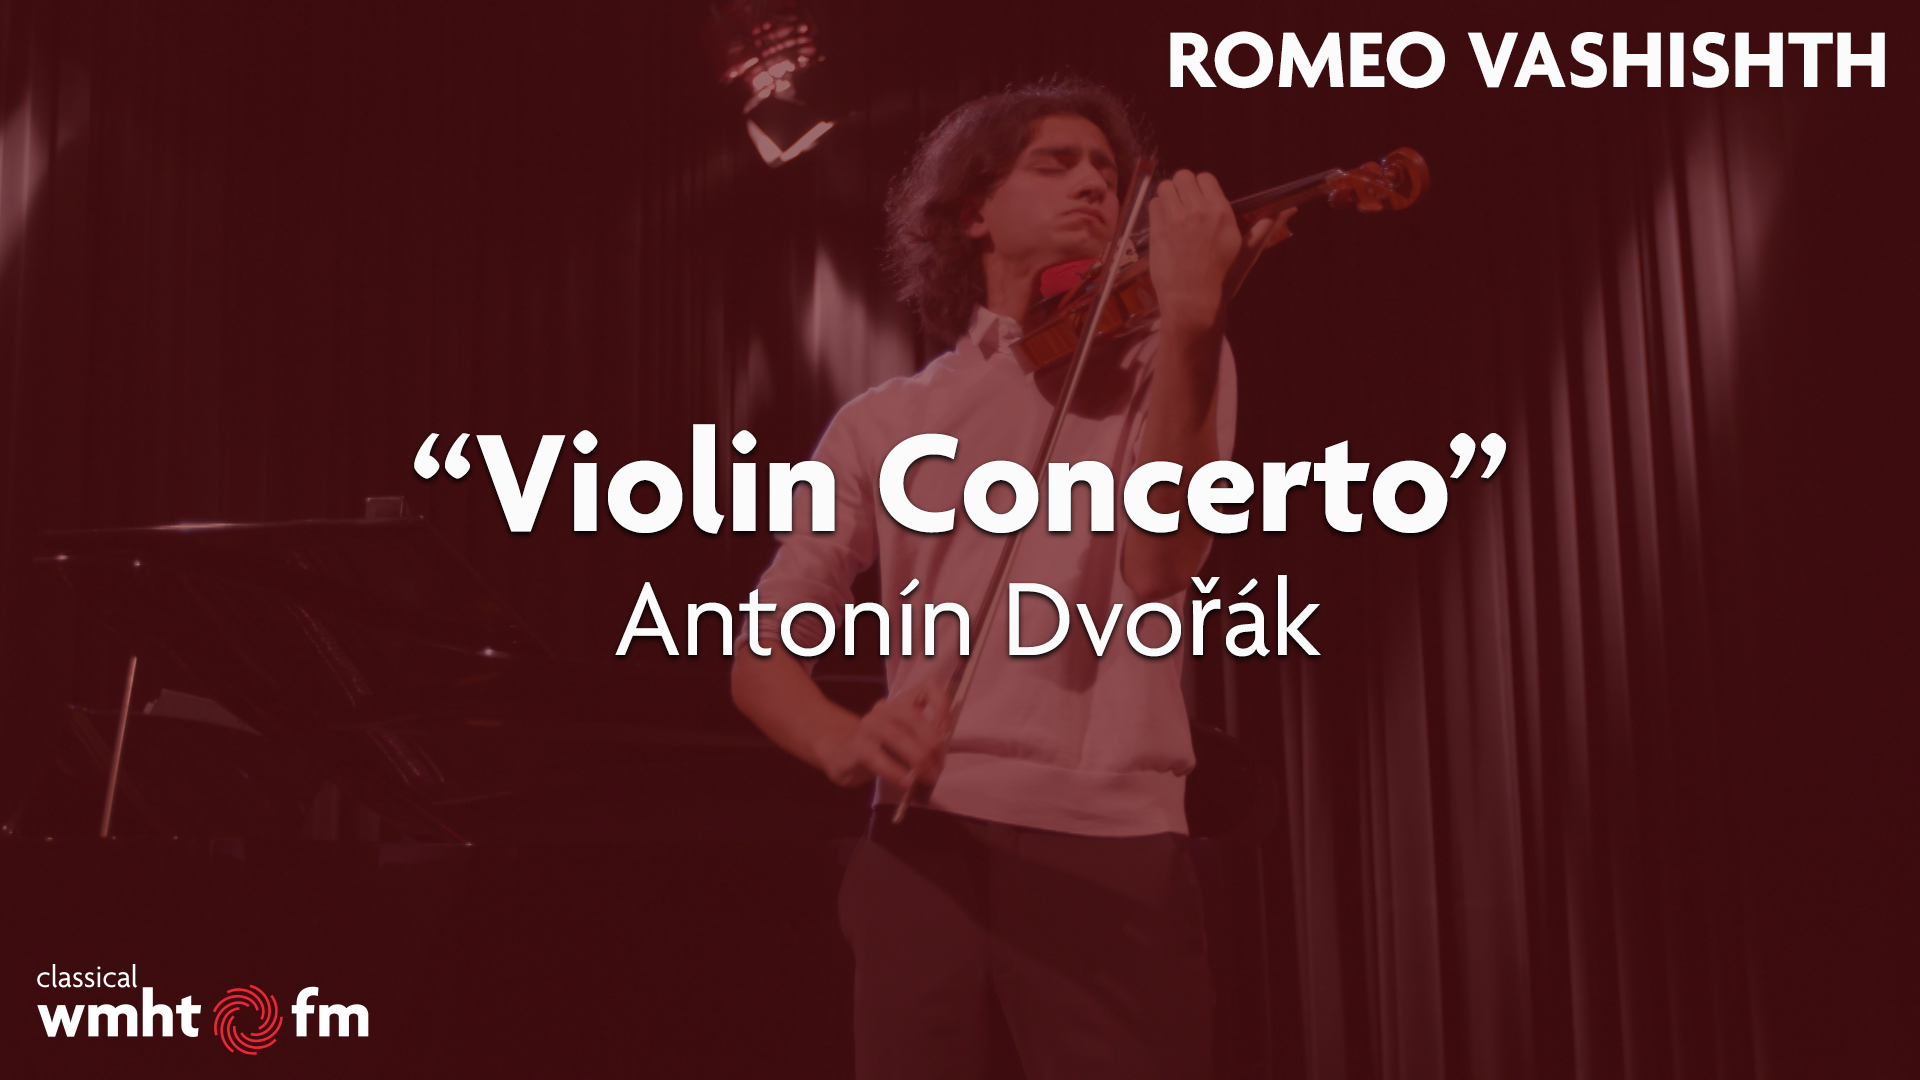 Romeo Vashishth: “Violin Concerto, Op.53” by Antonin Dvorak